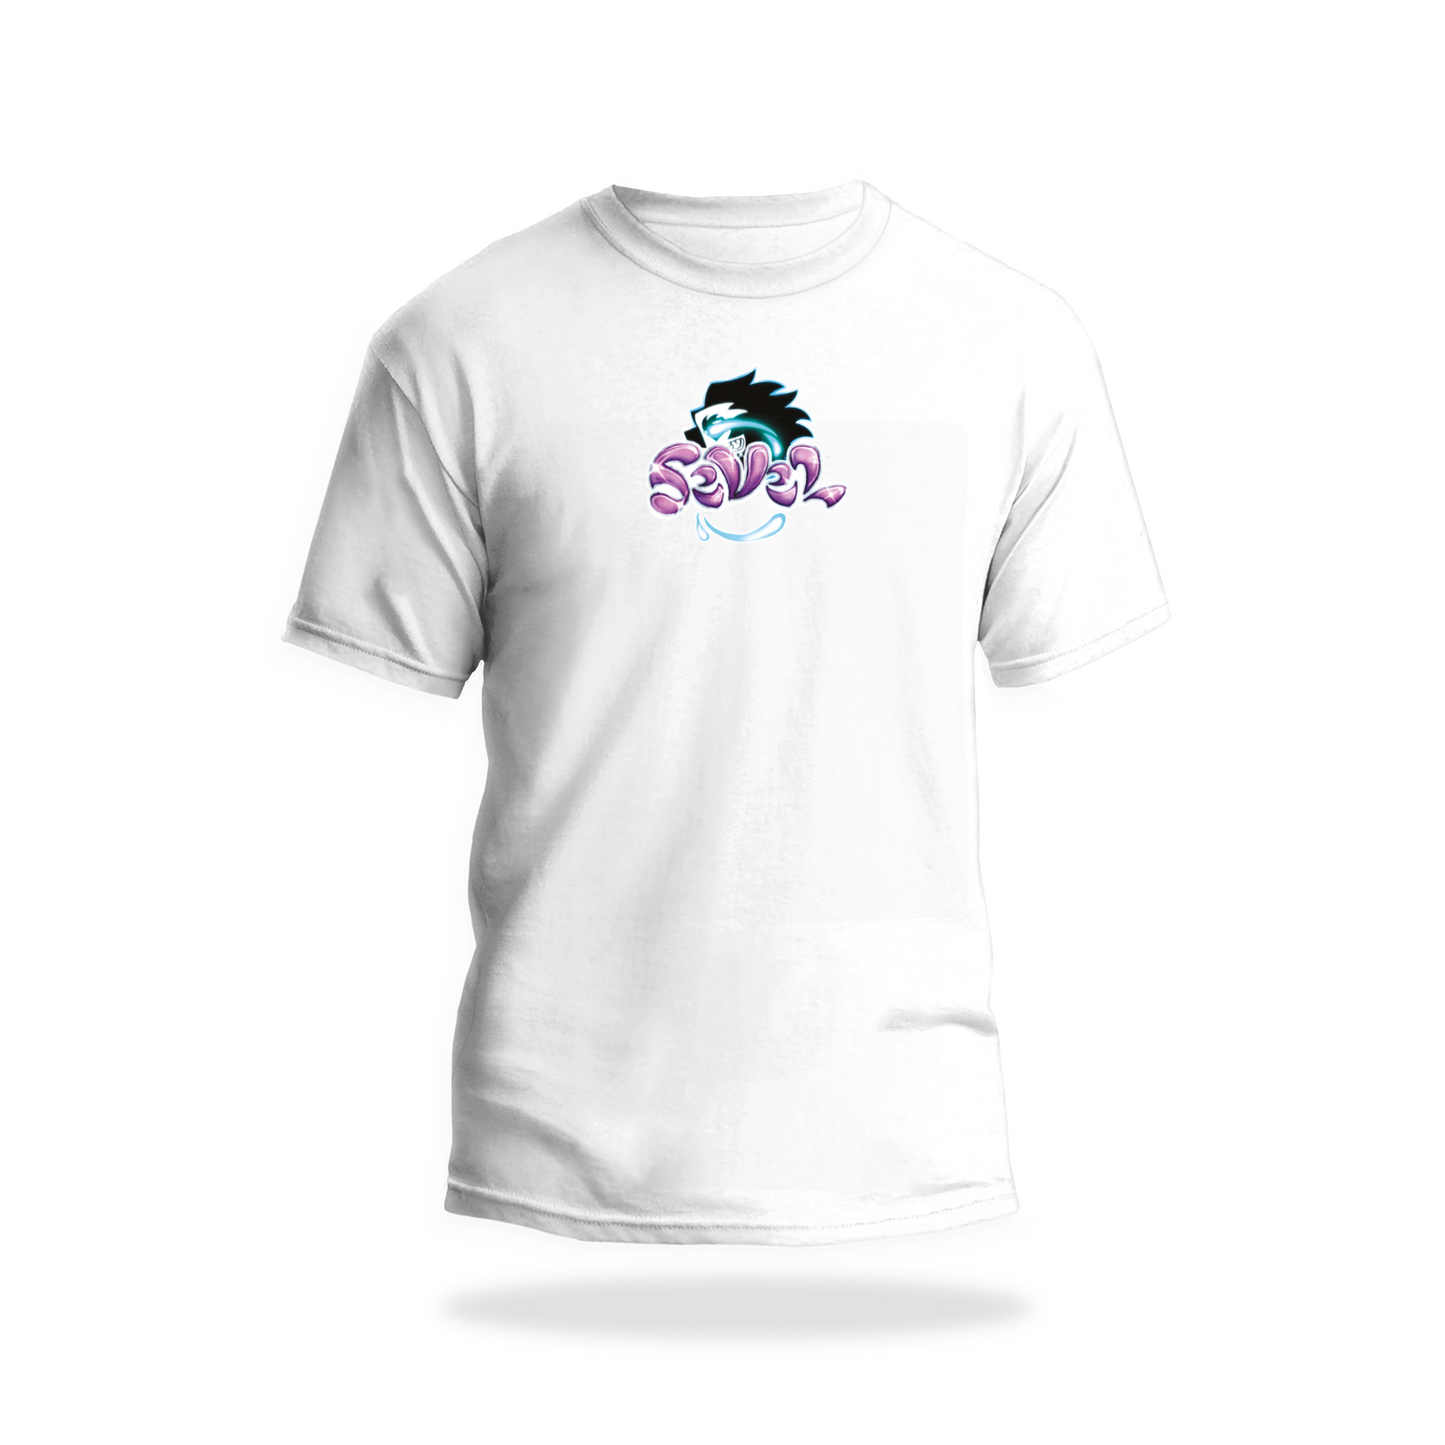 SeVeL Schrift T-Shirt / Logo Mittig